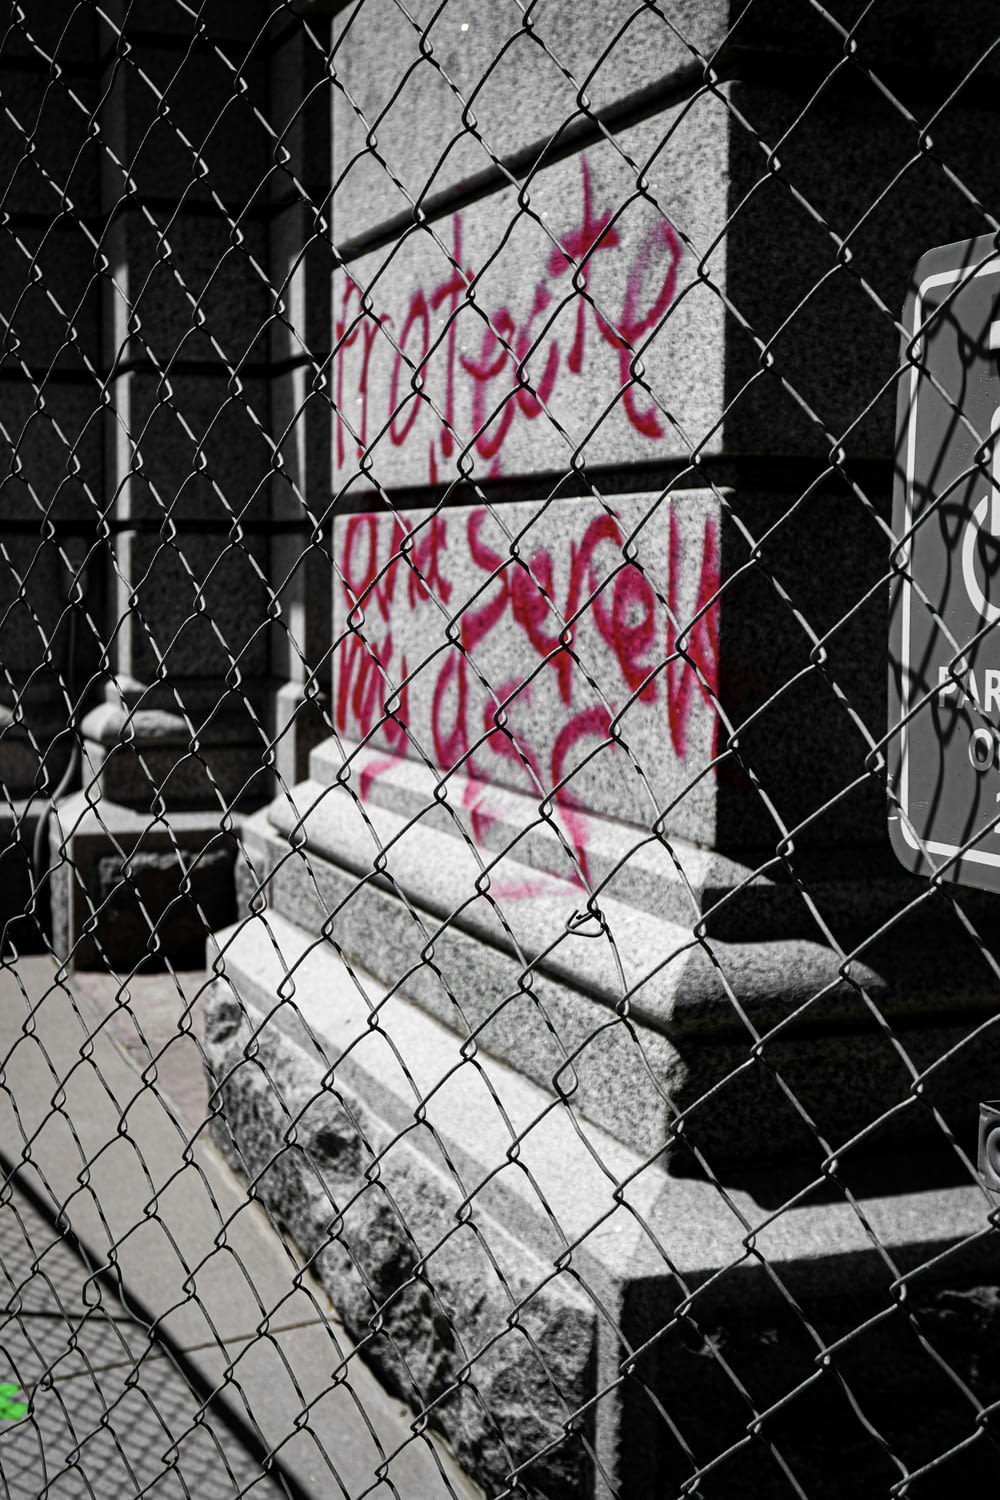 Una foto en blanco y negro de graffiti en una valla